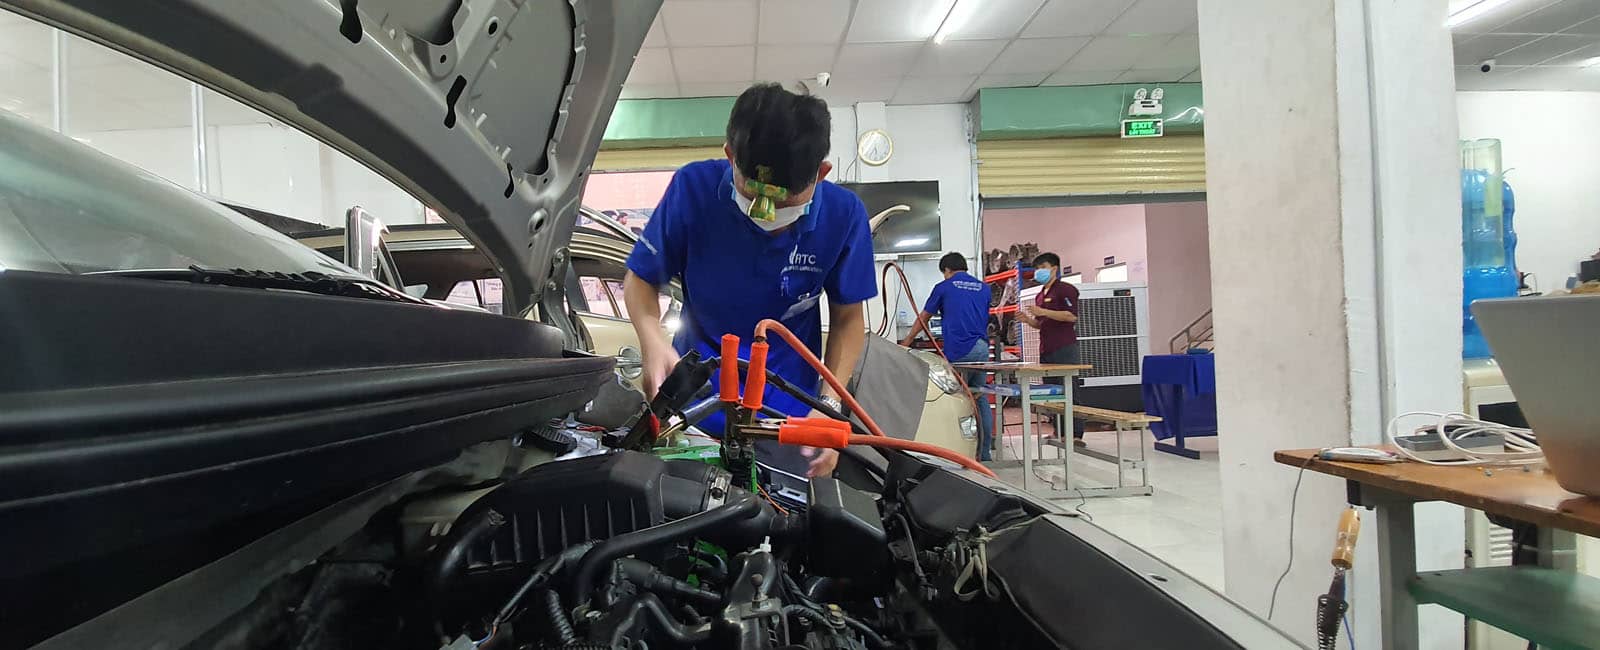 Trung tâm dạy nghề sửa chữa ô tô VATC